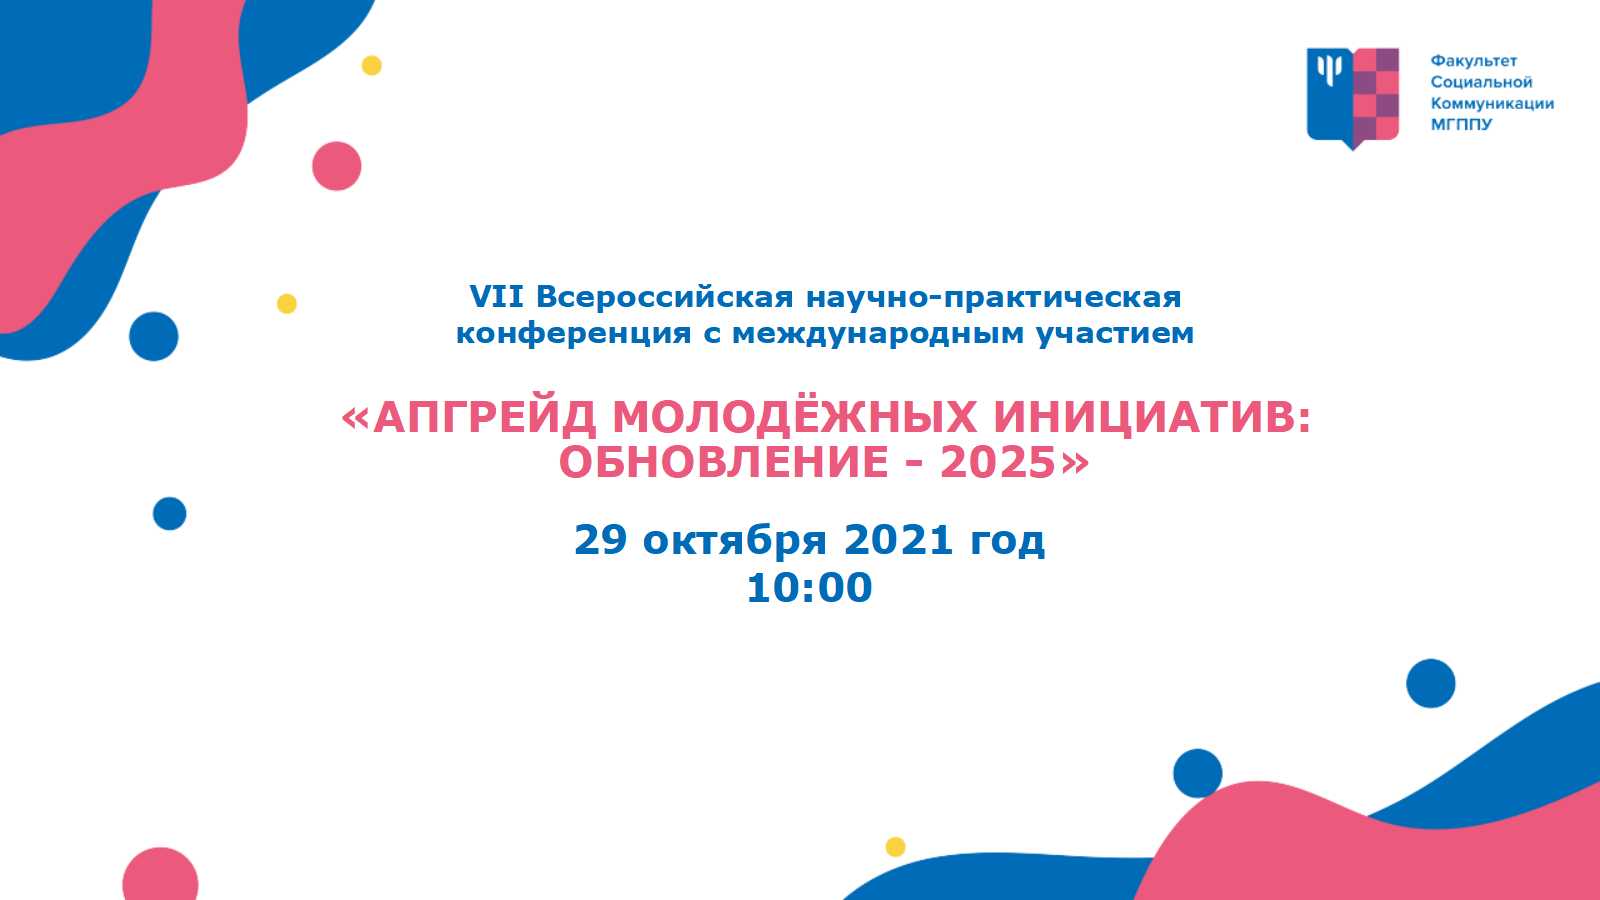 «Апгрейд молодежных инициатив: обновление - 2025»